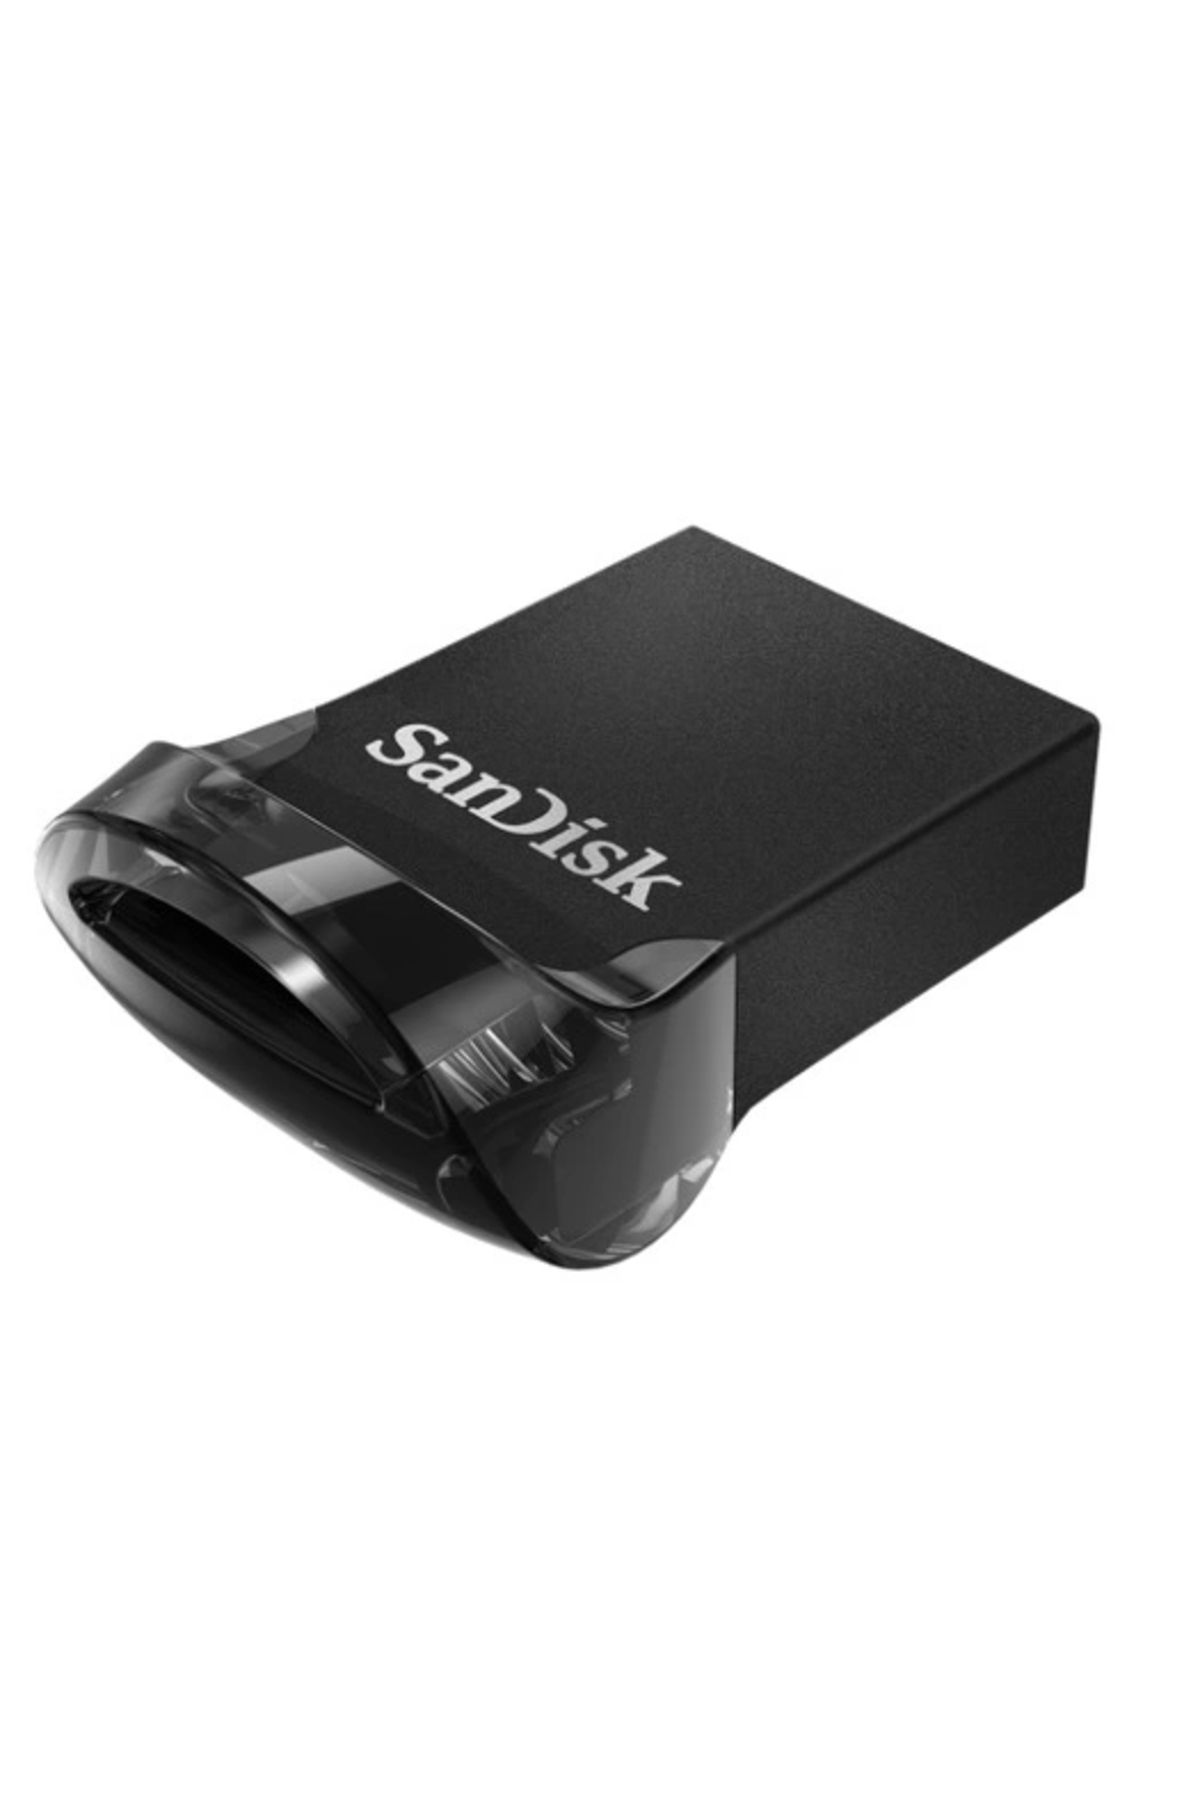 Sandisk Ultra Fit™ Usb 3.1 64gb - Small Form Factor Plug Stay Hi-speed Usb Drive